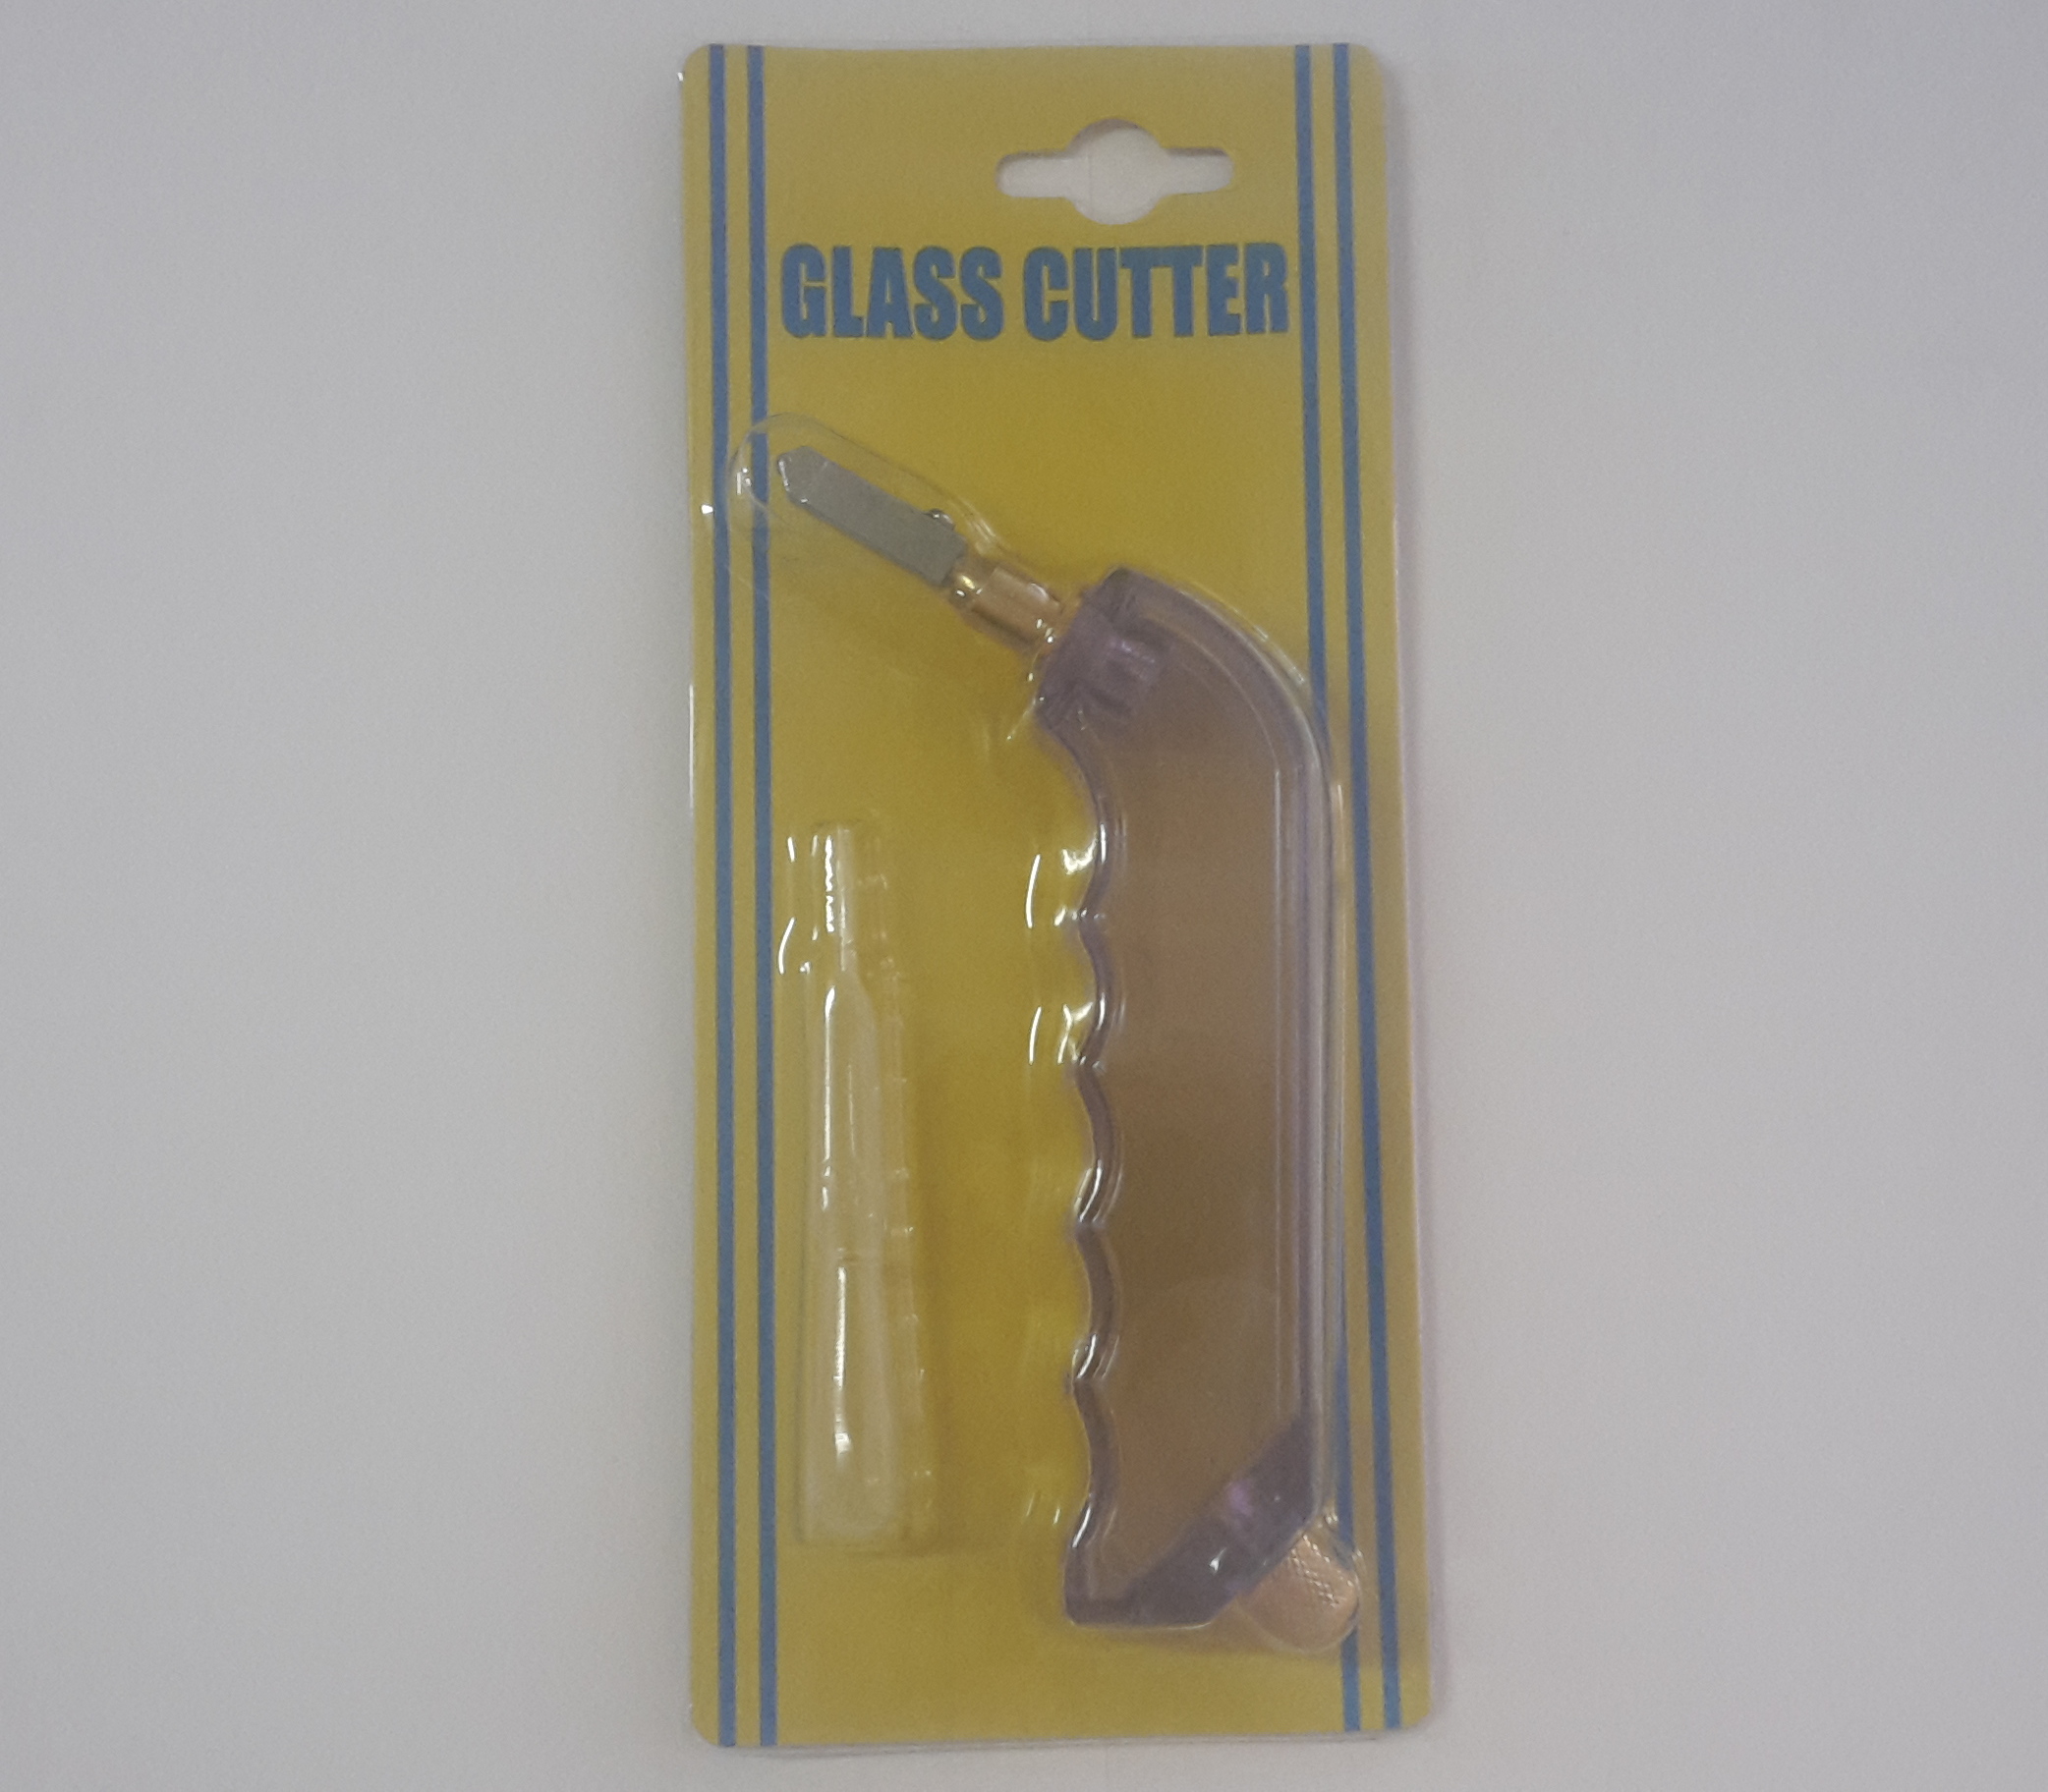 3.1 Pistol Grip glass cutter